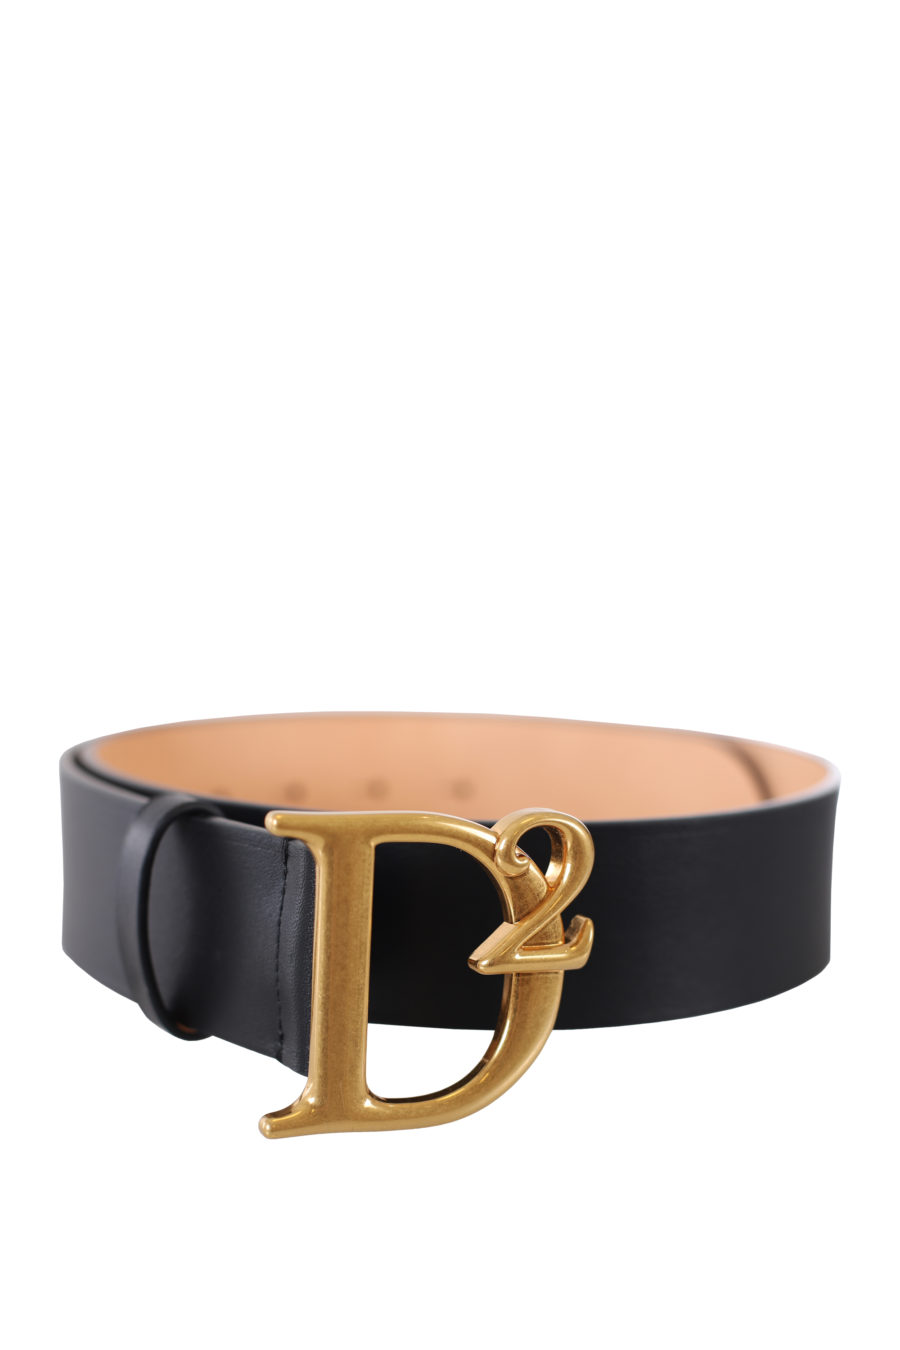 Cinturón negro con logo "D2" dorado - IMG 9410